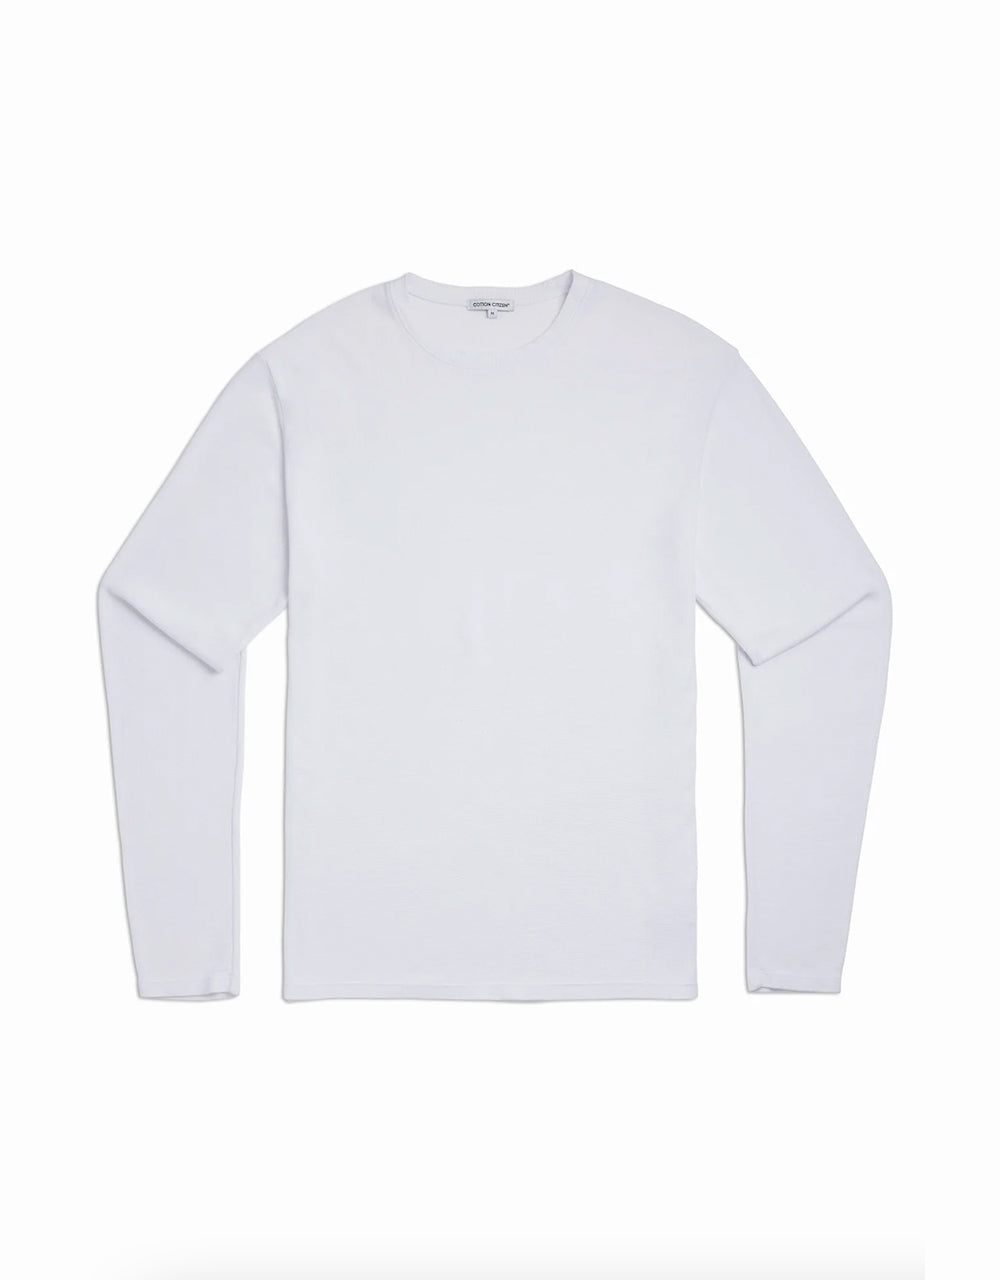 Hendrix Crew Shirt - White